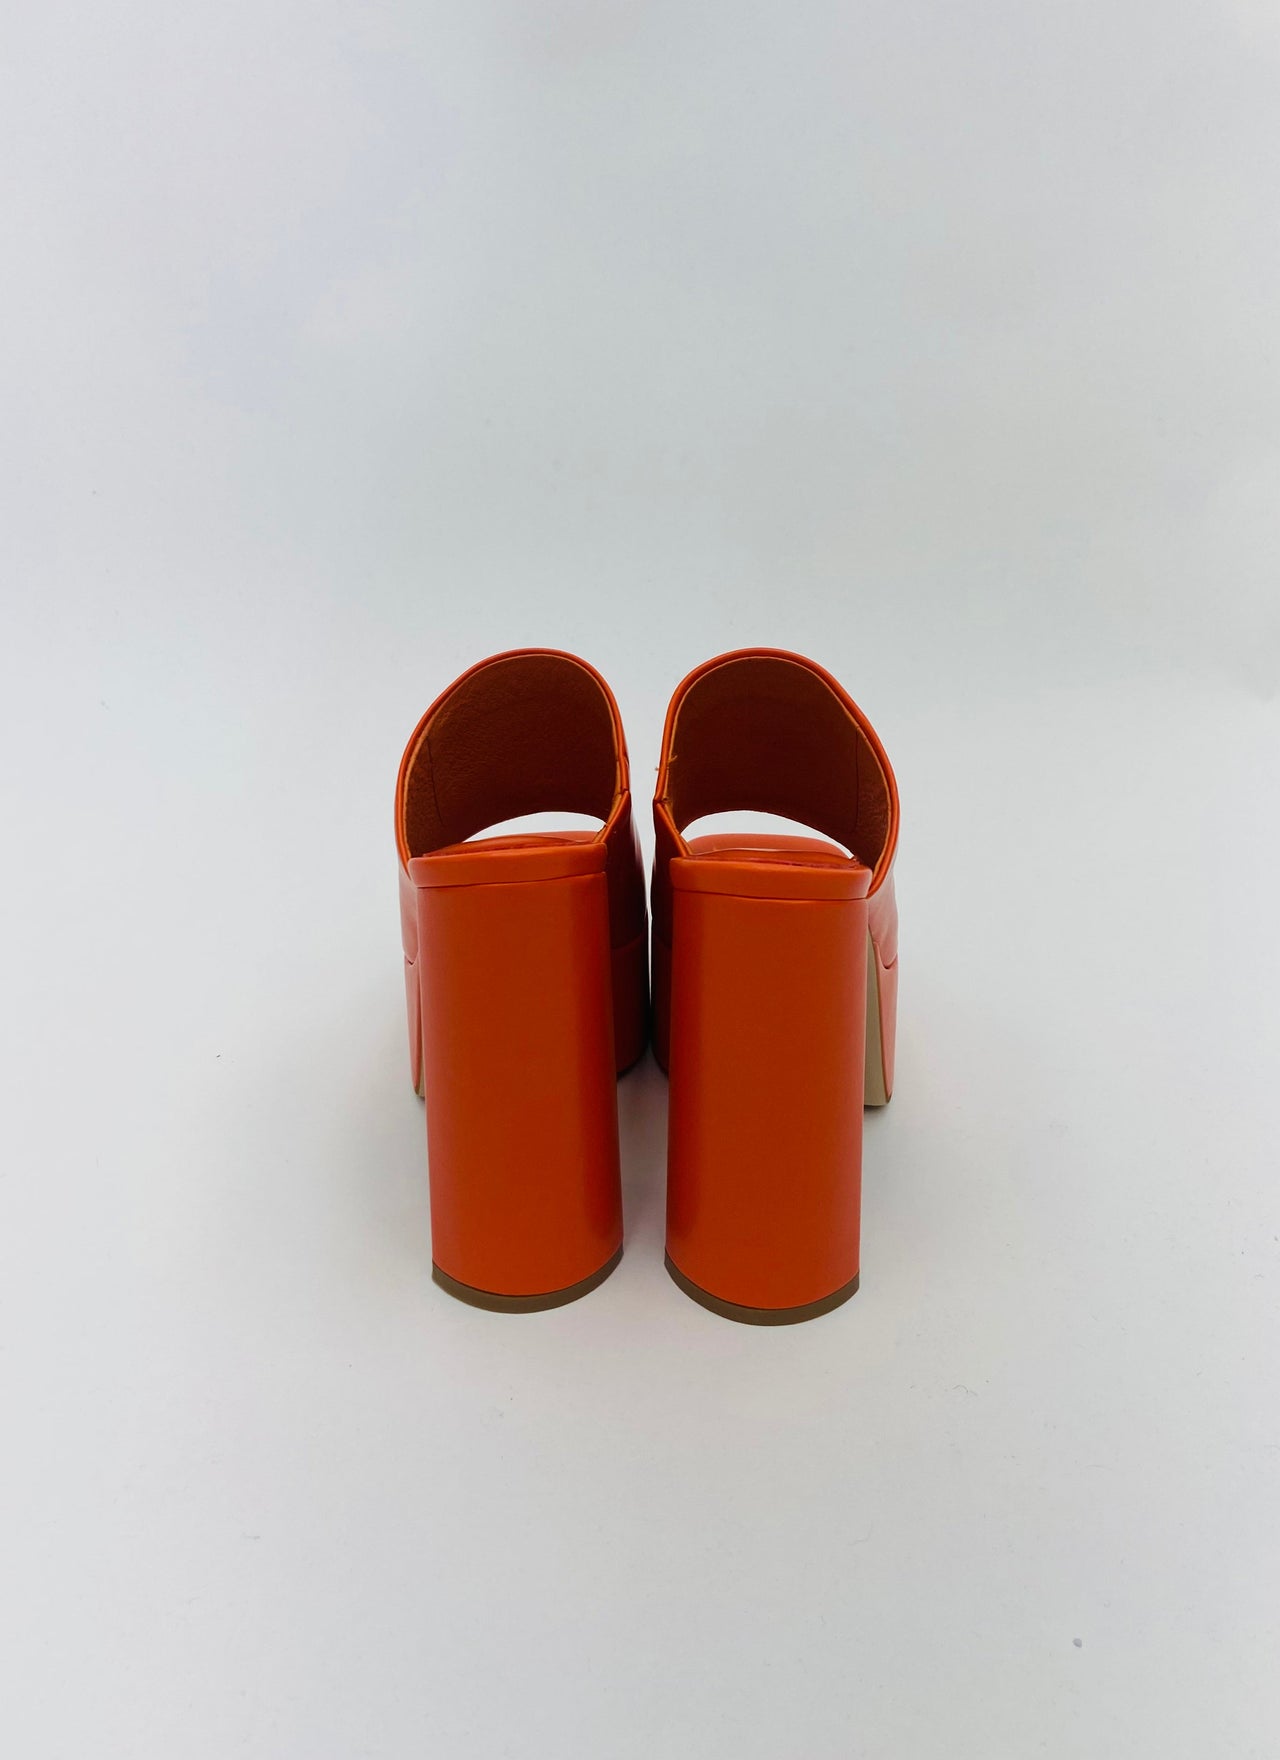 Luna Luv Platform Mule Orange, Shoes by Jeffrey Campbell | LIT Boutique